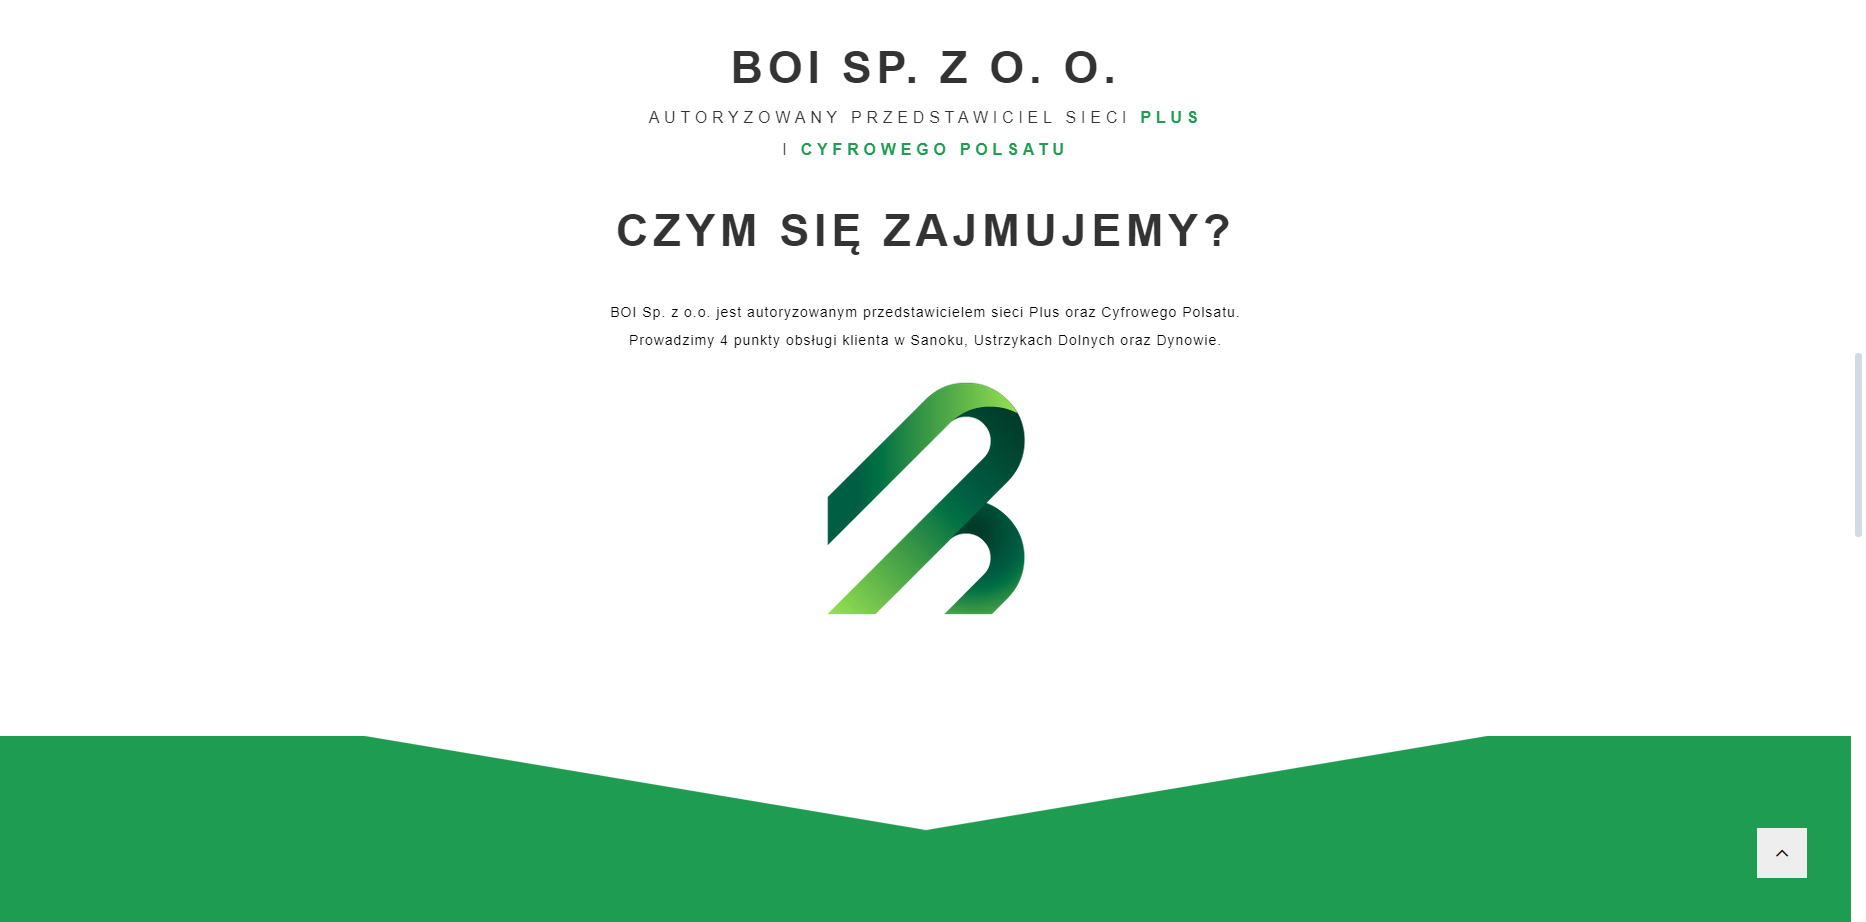 Strona internetowa www.boi.biz.pl - zapraszamy do odwiedzenia